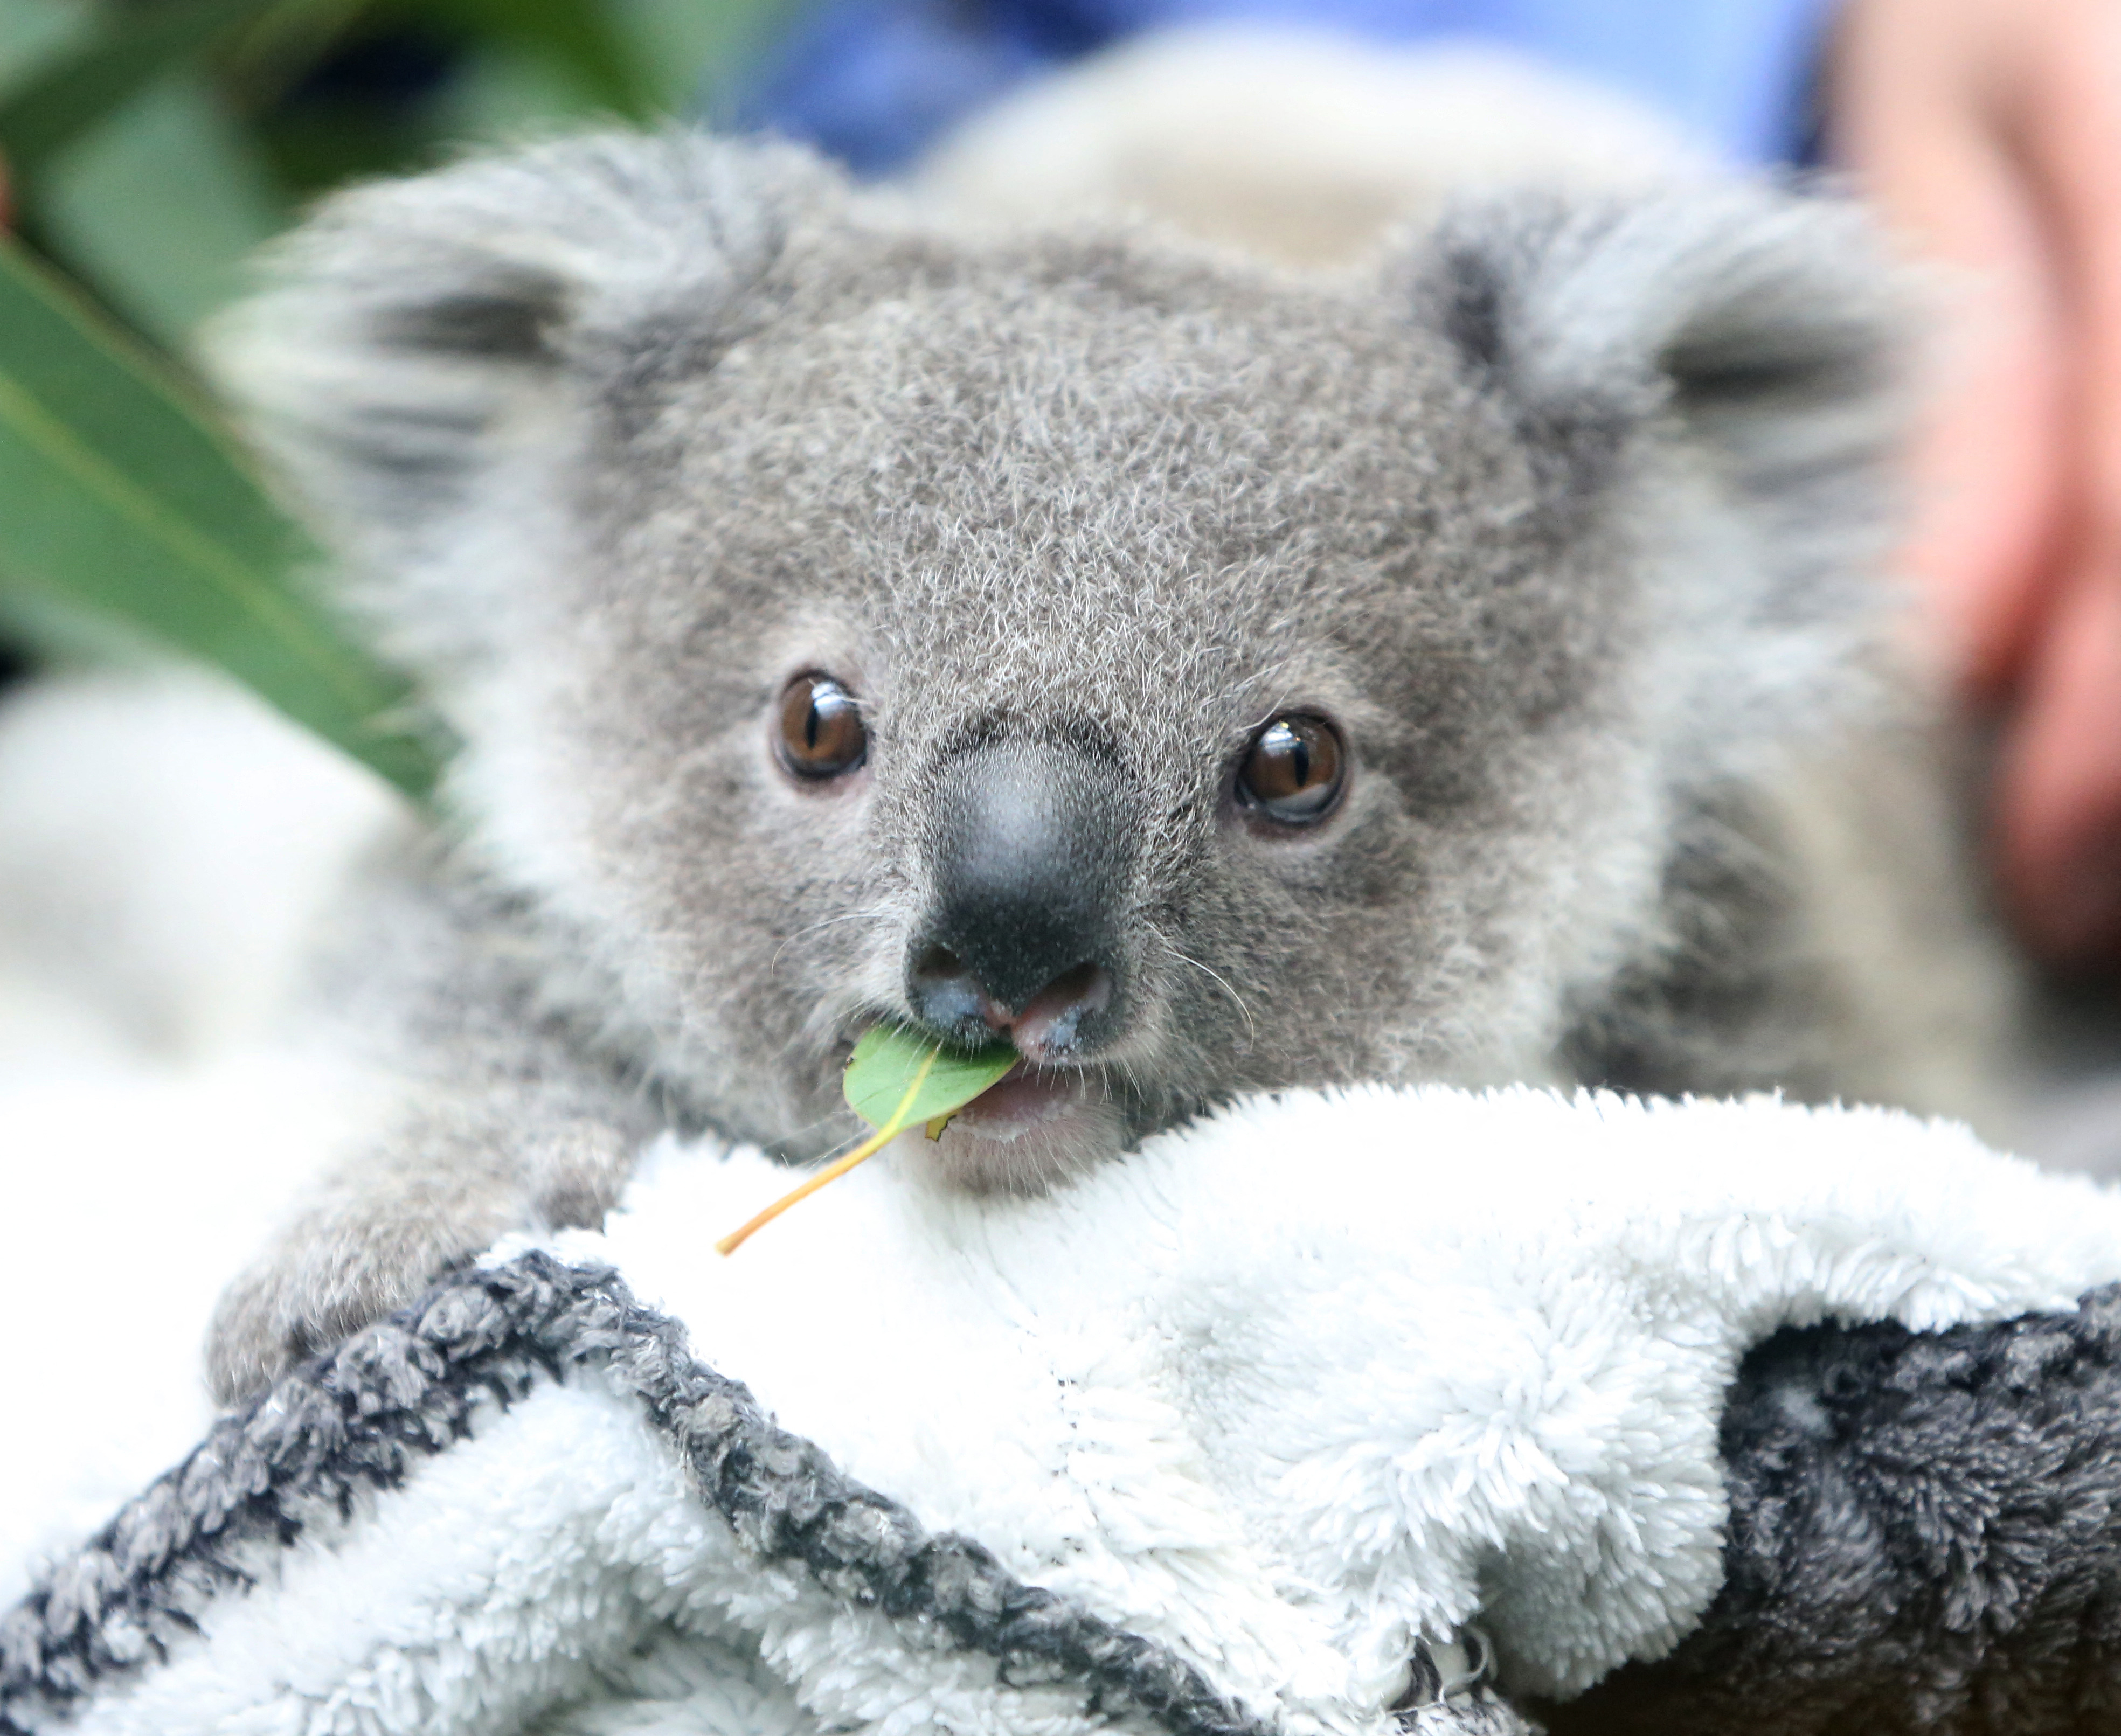 Fagyasztott spermával akarják megmenteni a koalákat a kihalástól